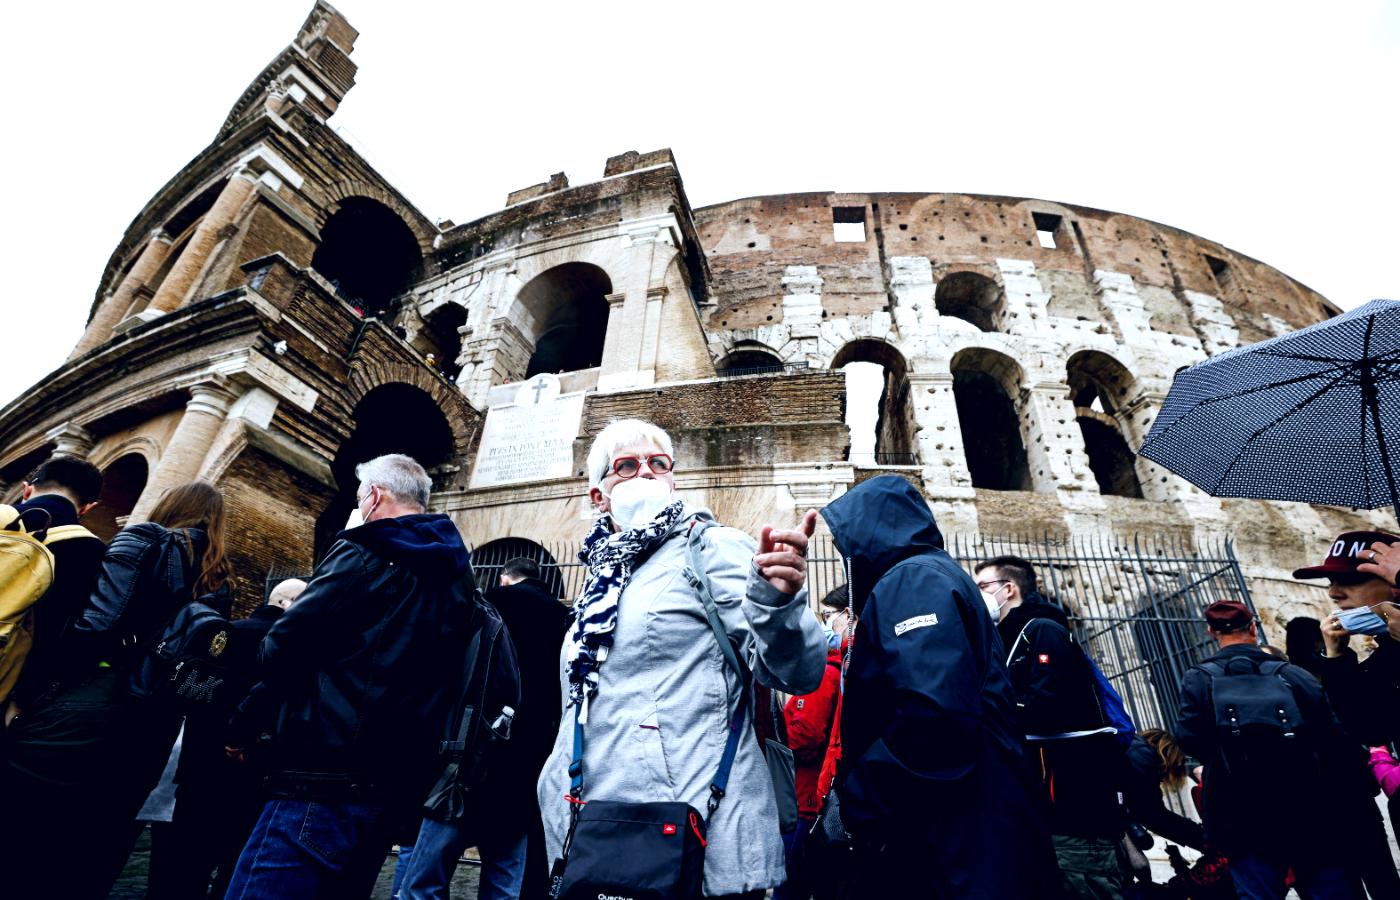 Włochy zniosły część restrykcji covidowych. Na zdjęciu Rzym, 1 kwietnia 2022 r.